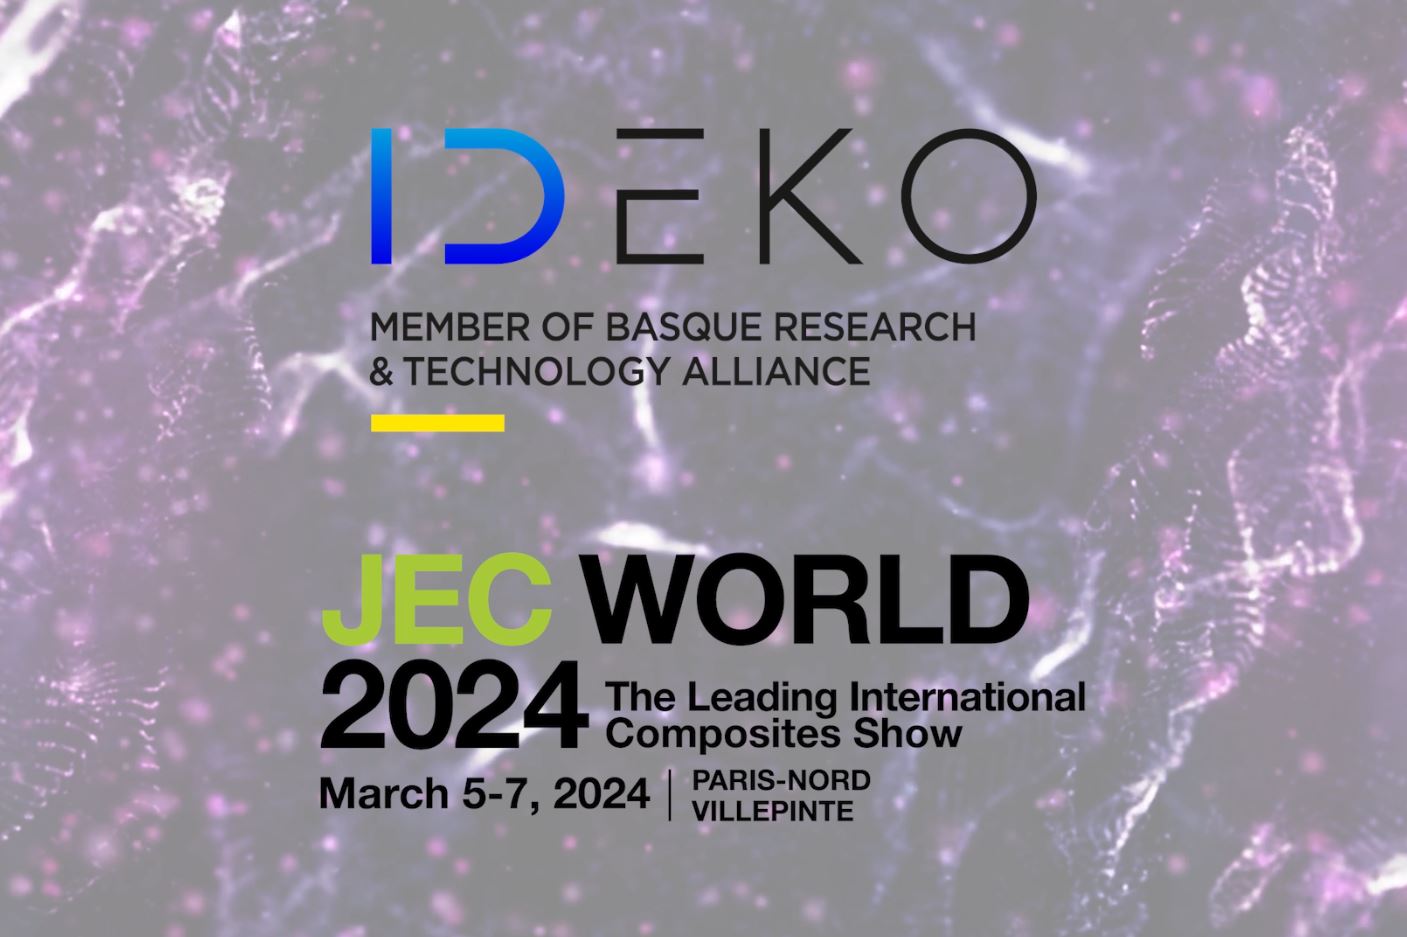 IDEKO pone el foco en la sostenibilidad y la digitalización de la industria aeronáutica en JEC World 2024